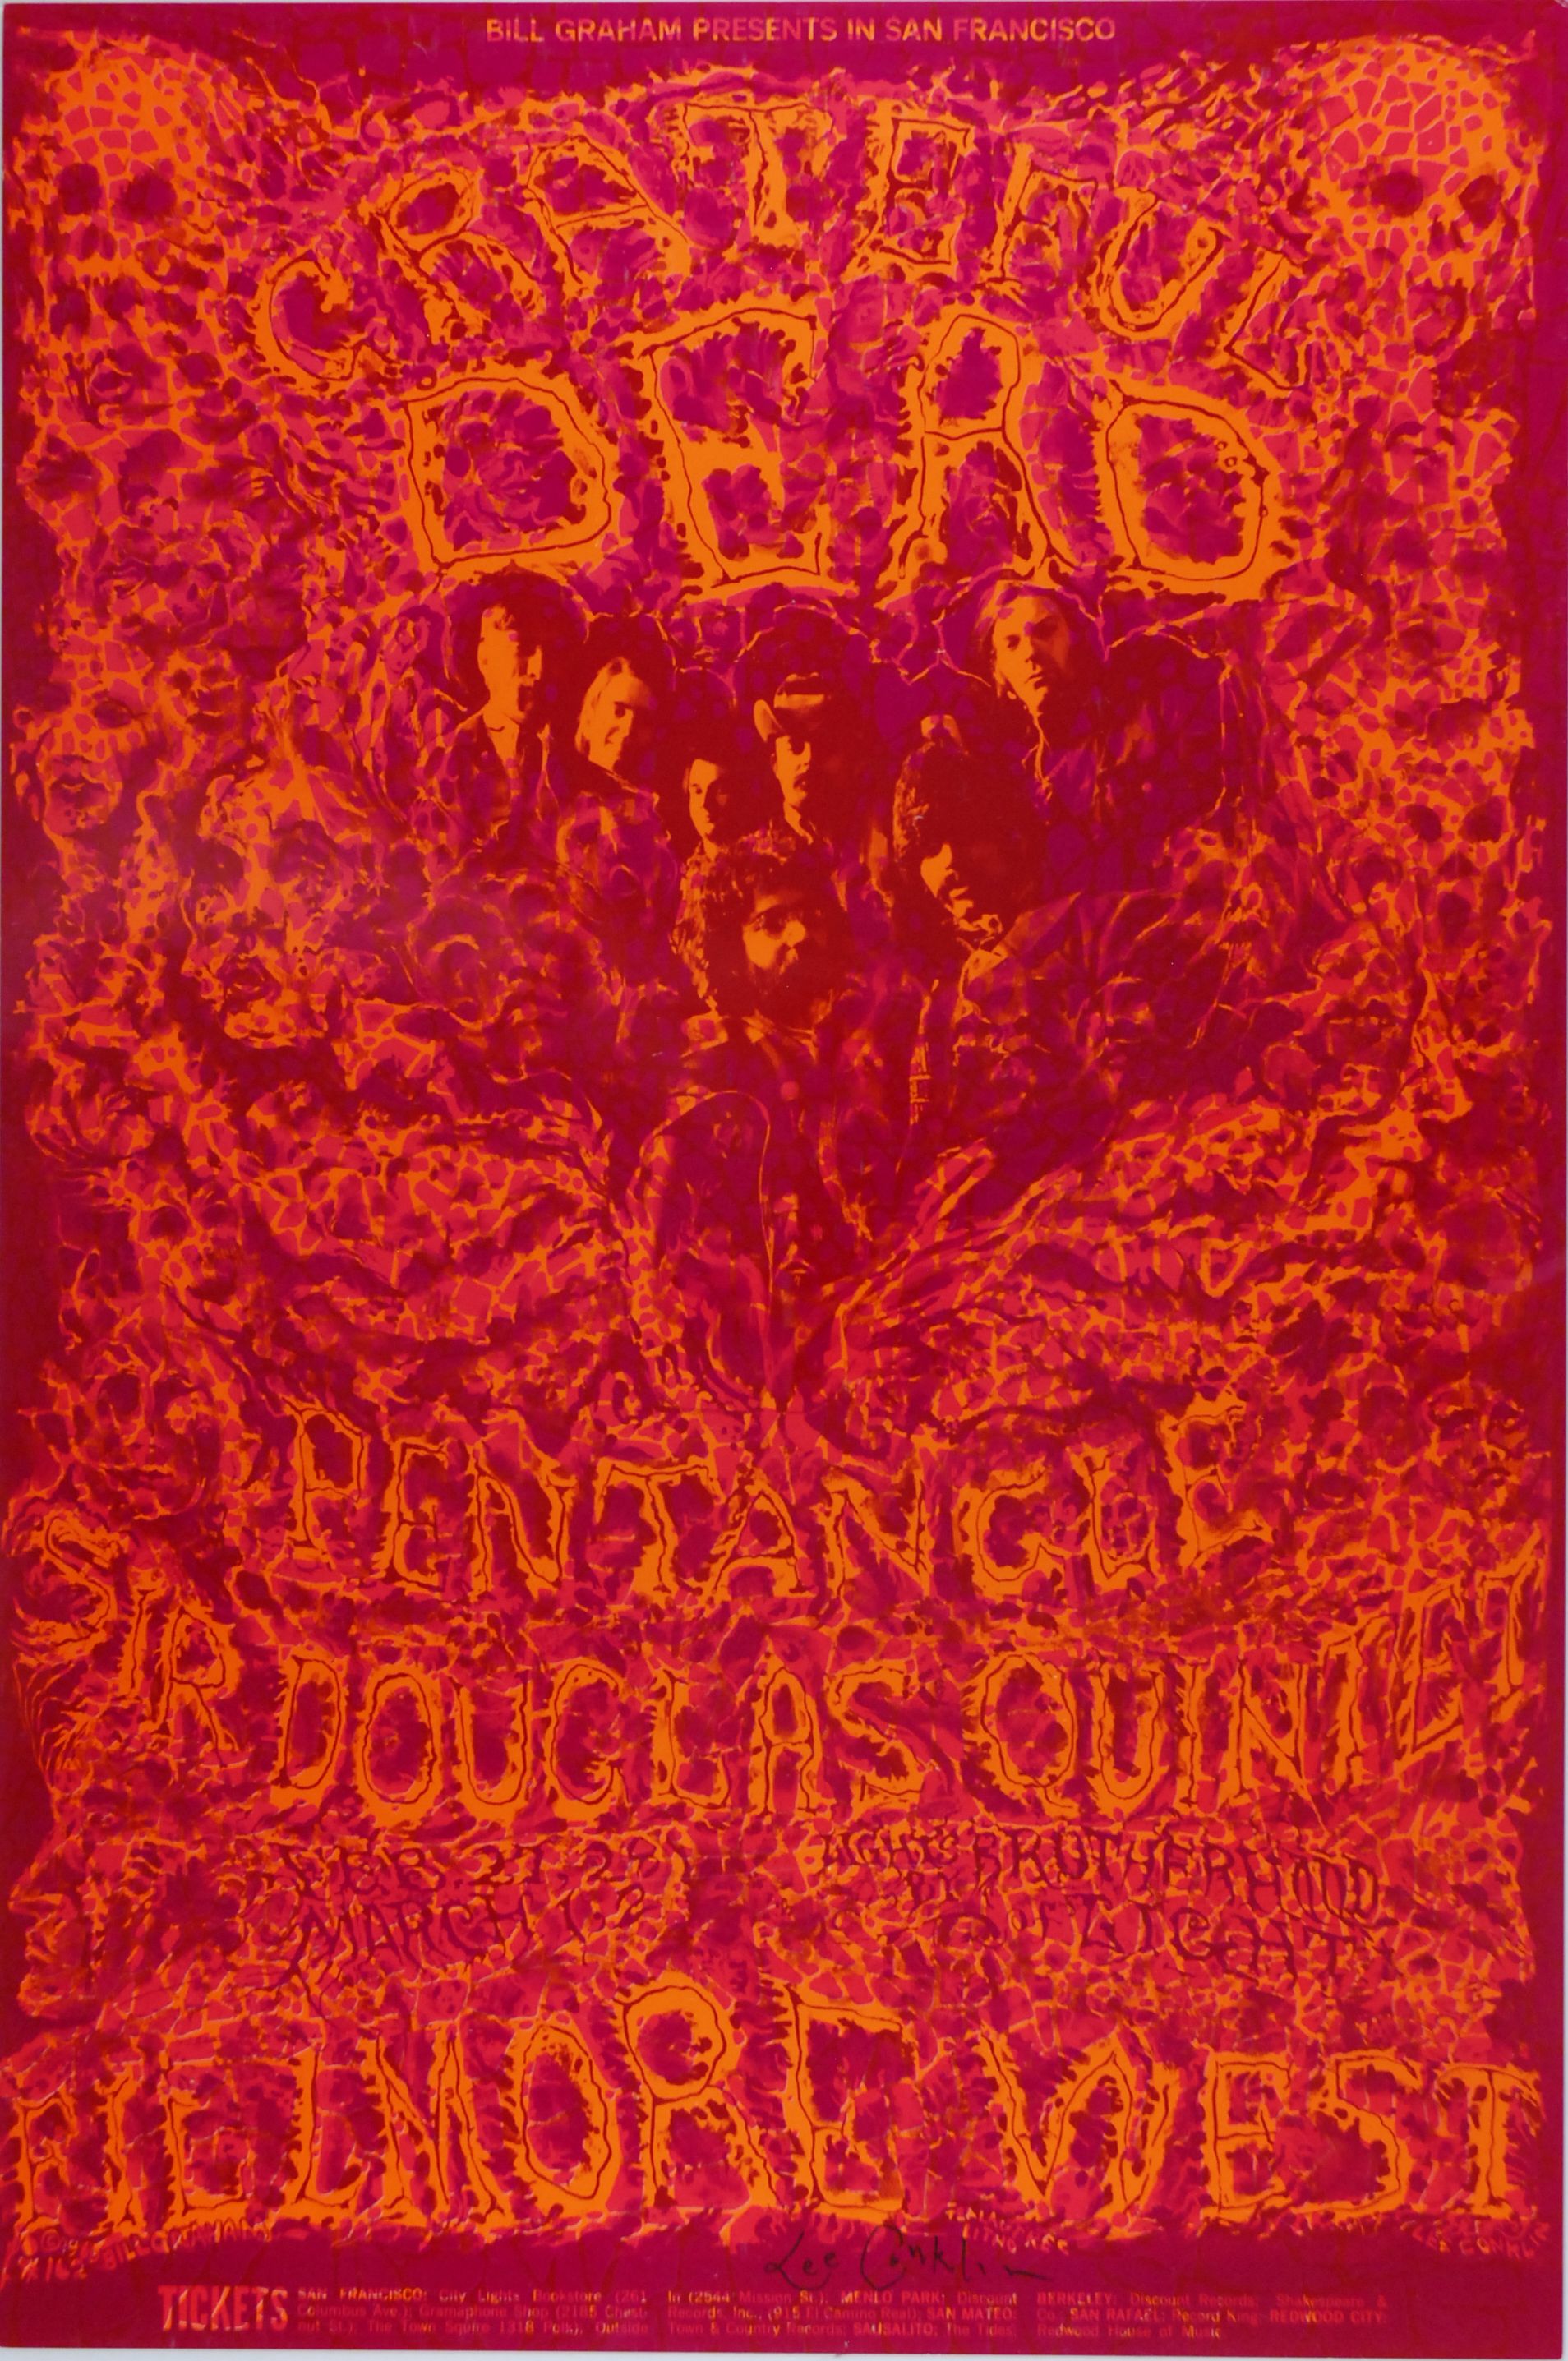 BG-162-OP-1 Concert Poster